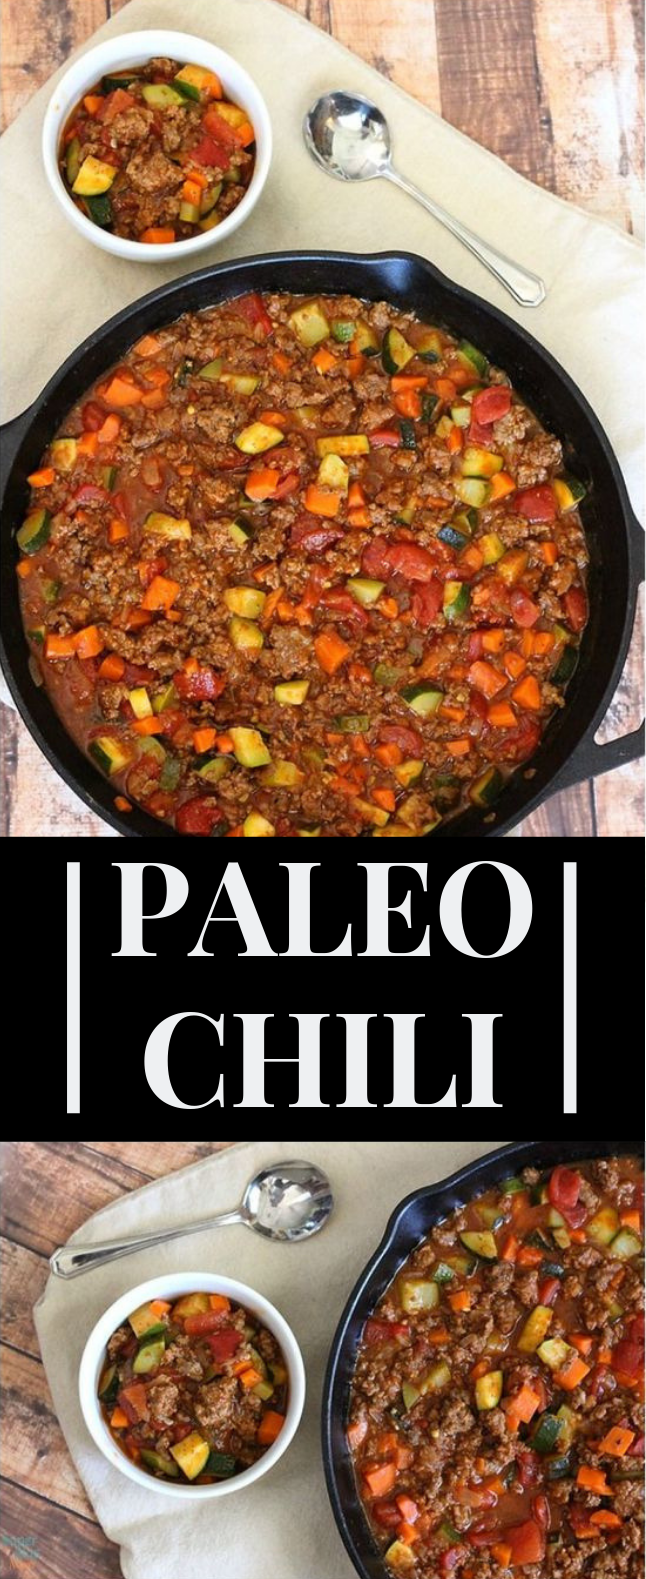 ALL MEAT VEGGIE CHILI – PALEO CHILI RECIPE #Paleo #HealthyRecipe